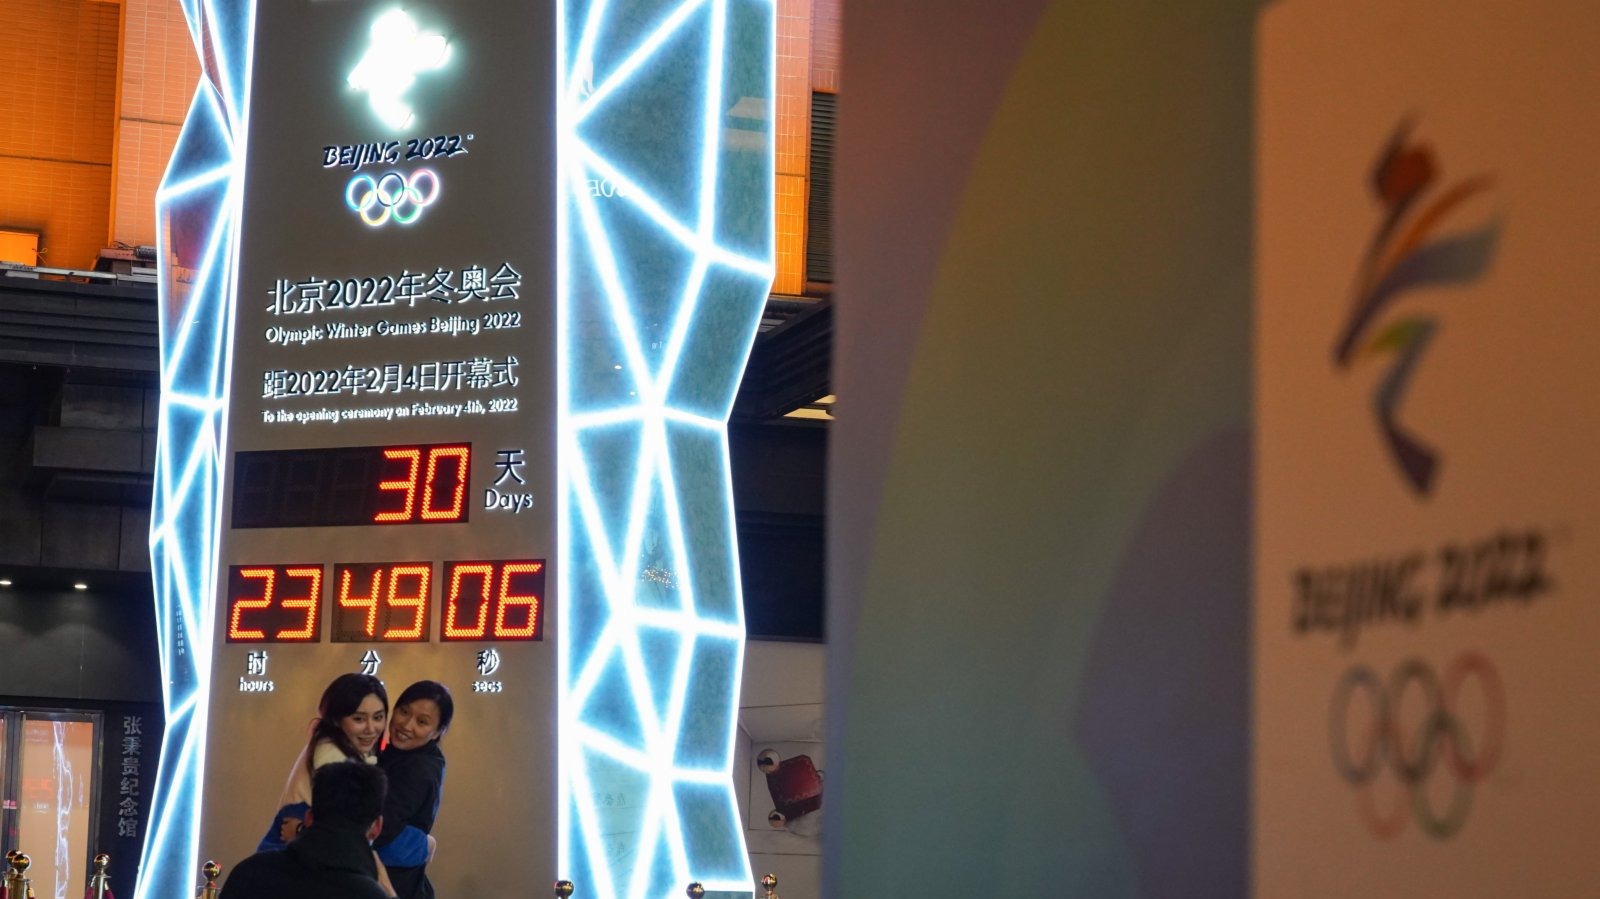 1月4日，北京2022年冬奧會迎來開幕倒計時一個月，人們在北京王府井大街的北京2022年冬奧會倒計時牌前拍照留念。